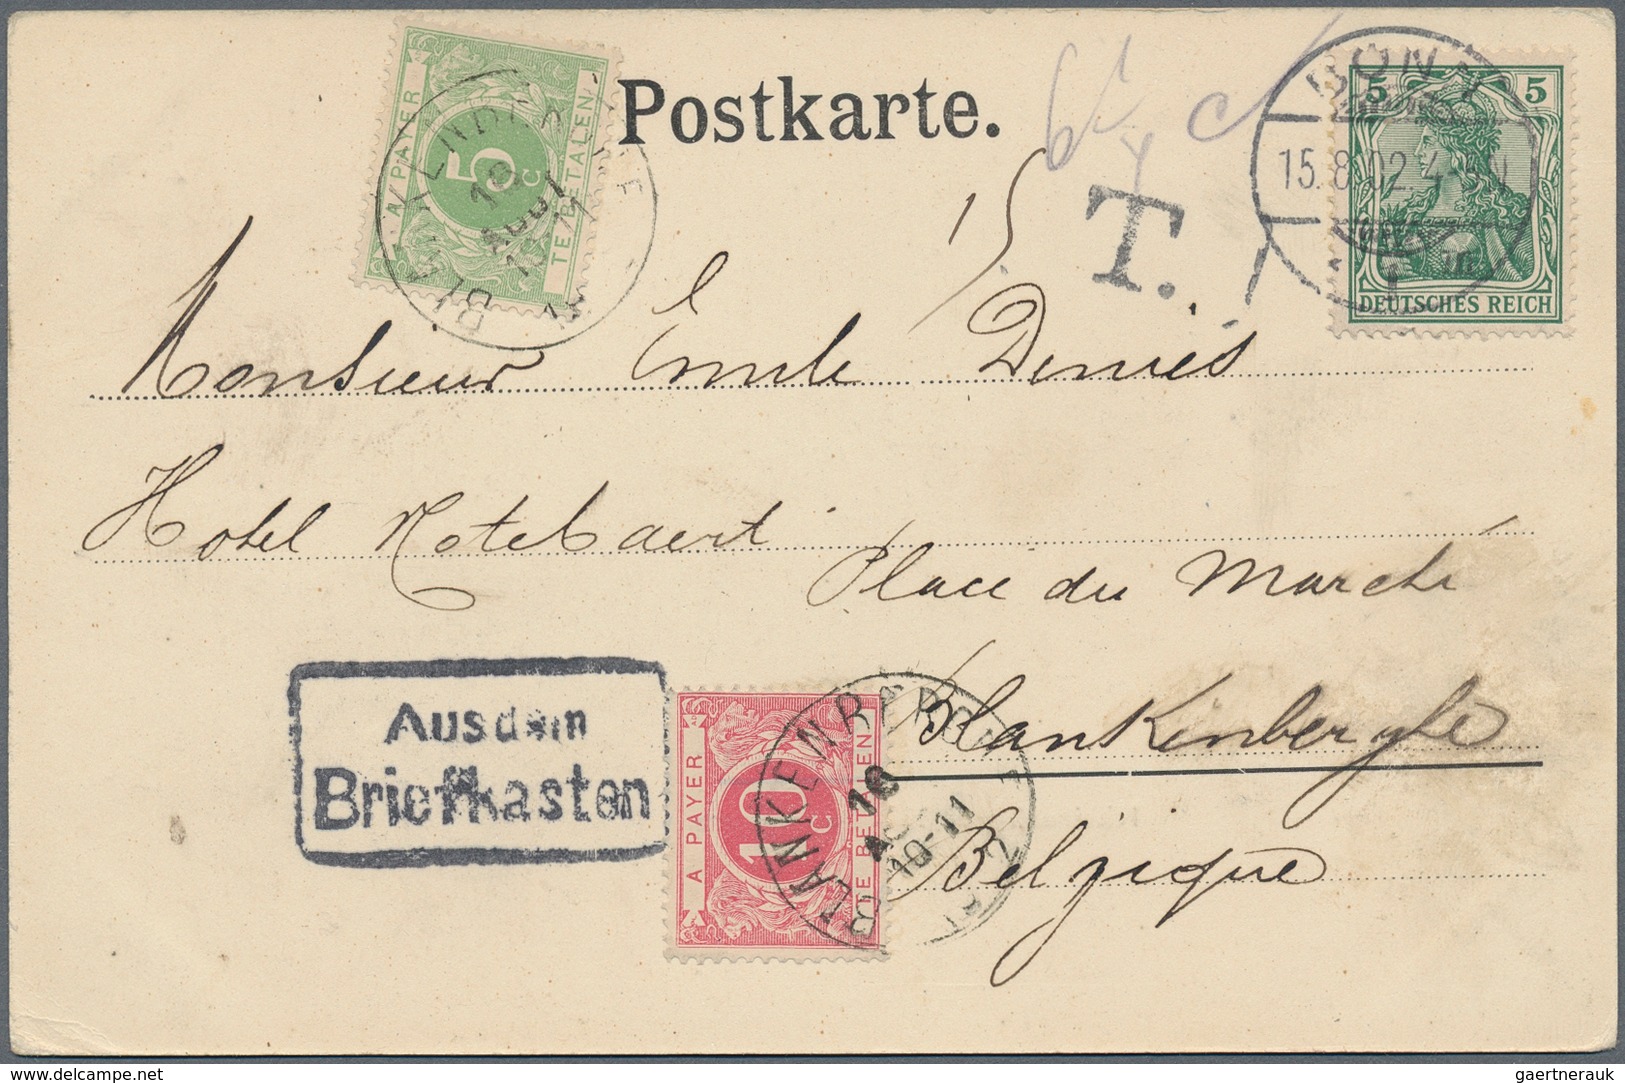 Deutsches Reich - Stempel: 1873/1944 ca., "AUS DEM BRIEFKASTEN", hochwertiger Sammlungsbestand mit c